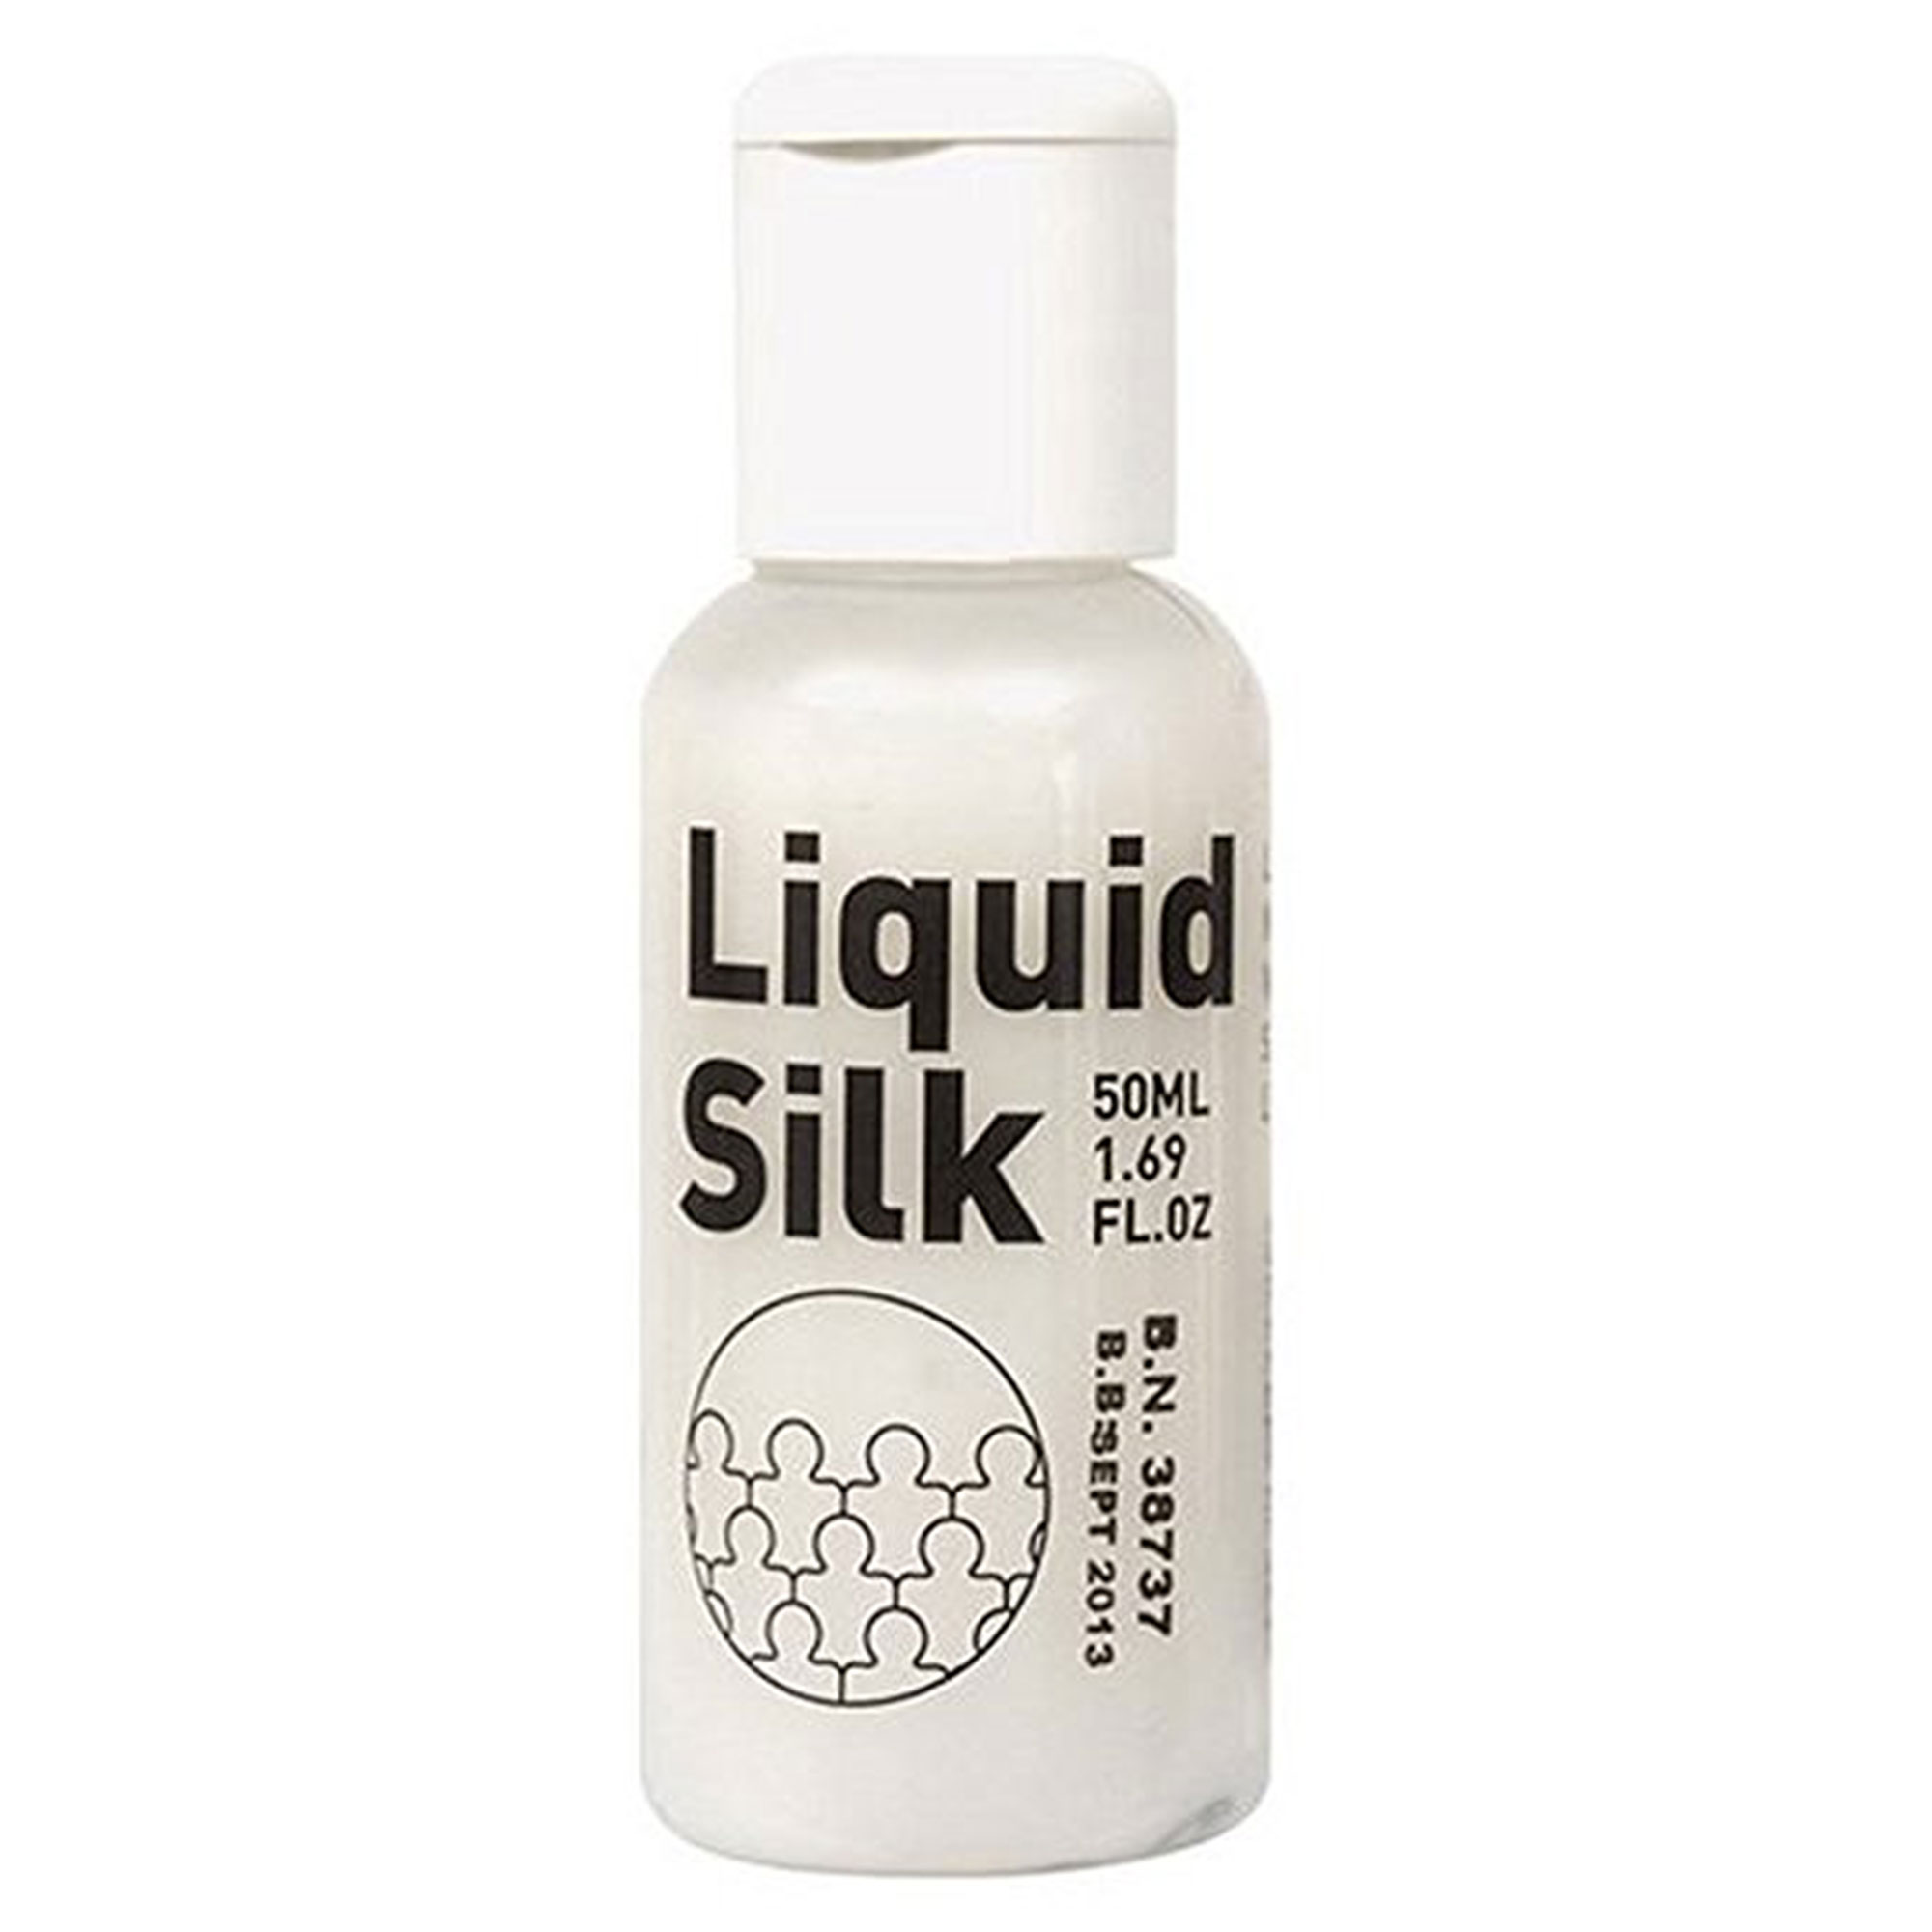 Liquid Silk - 50 ml | Vattenbaserat glidmedel | Intimast